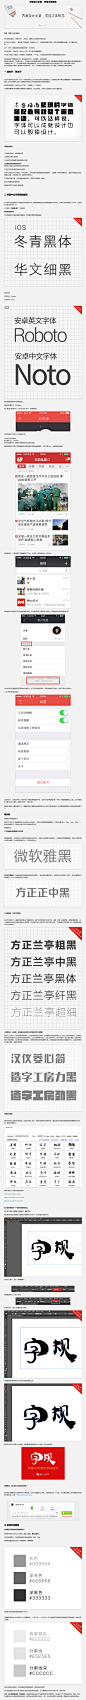 界面设计必备，常用字体规范-UI中国-专业界面设计平台